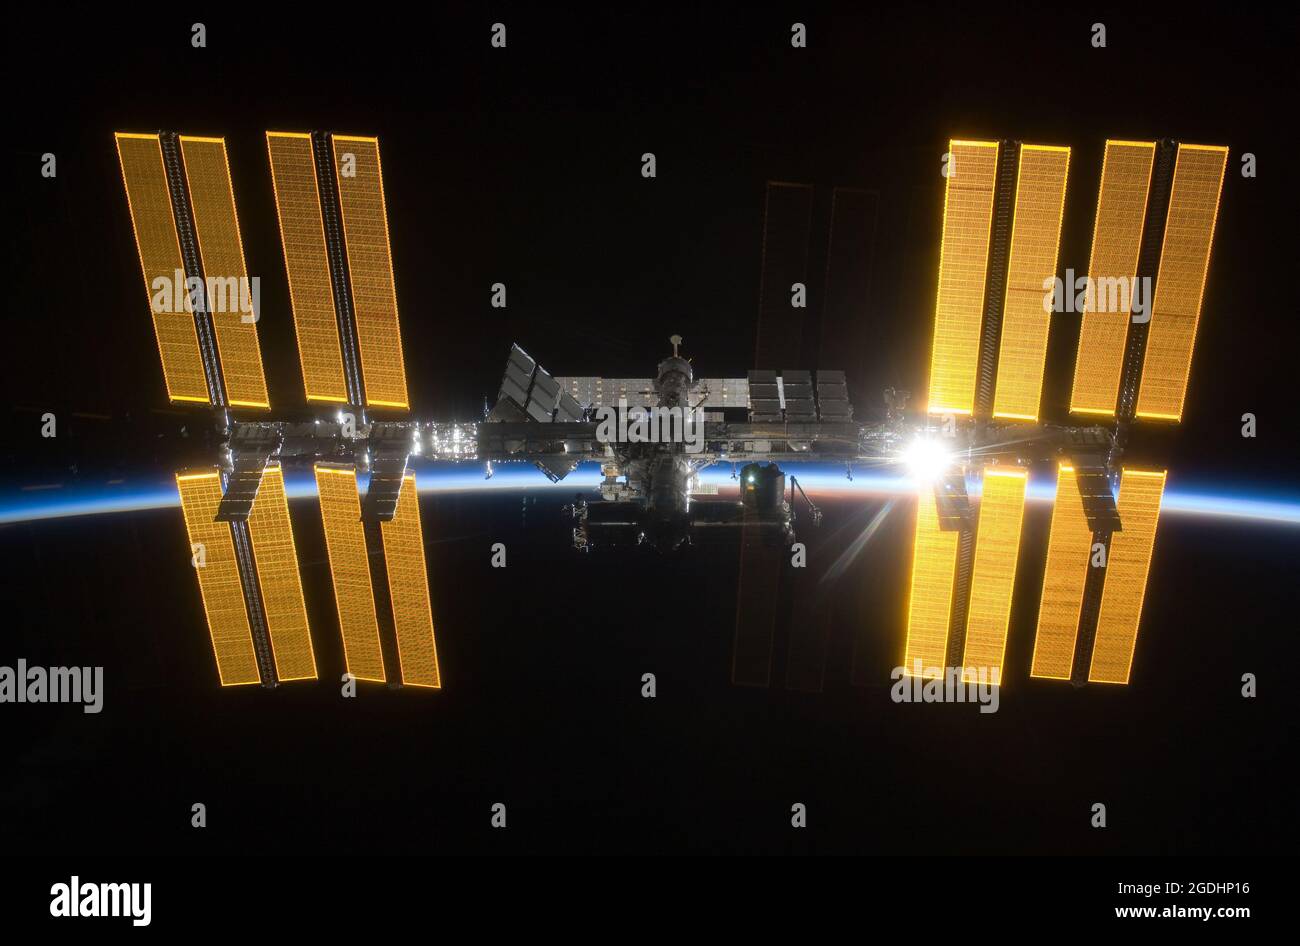 La Station spatiale internationale (ISS) vue contre la terre sombre avec le soleil levant derrière Banque D'Images